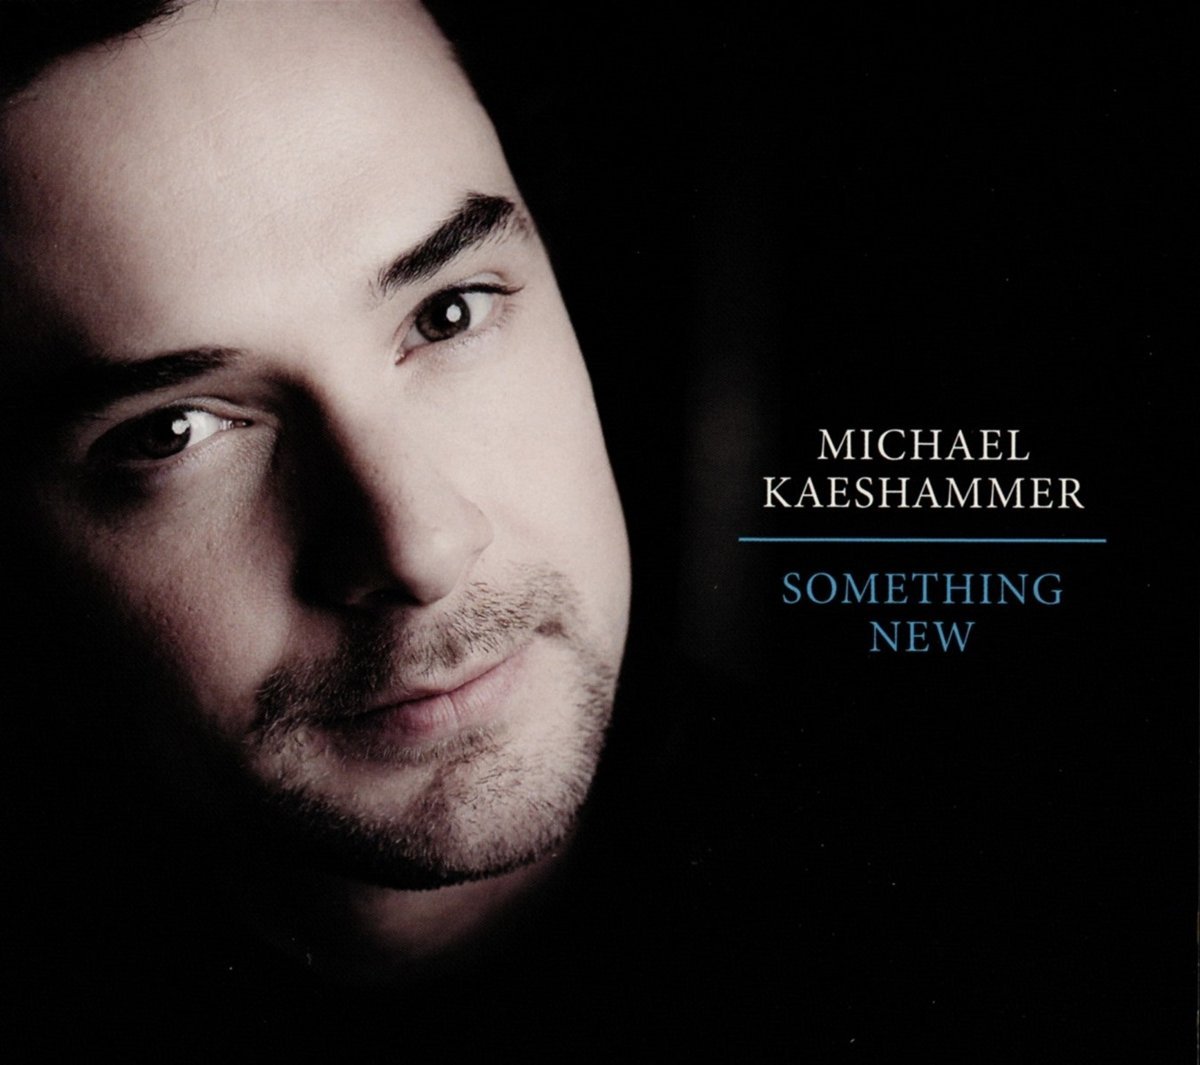 Michael Kaeshammer